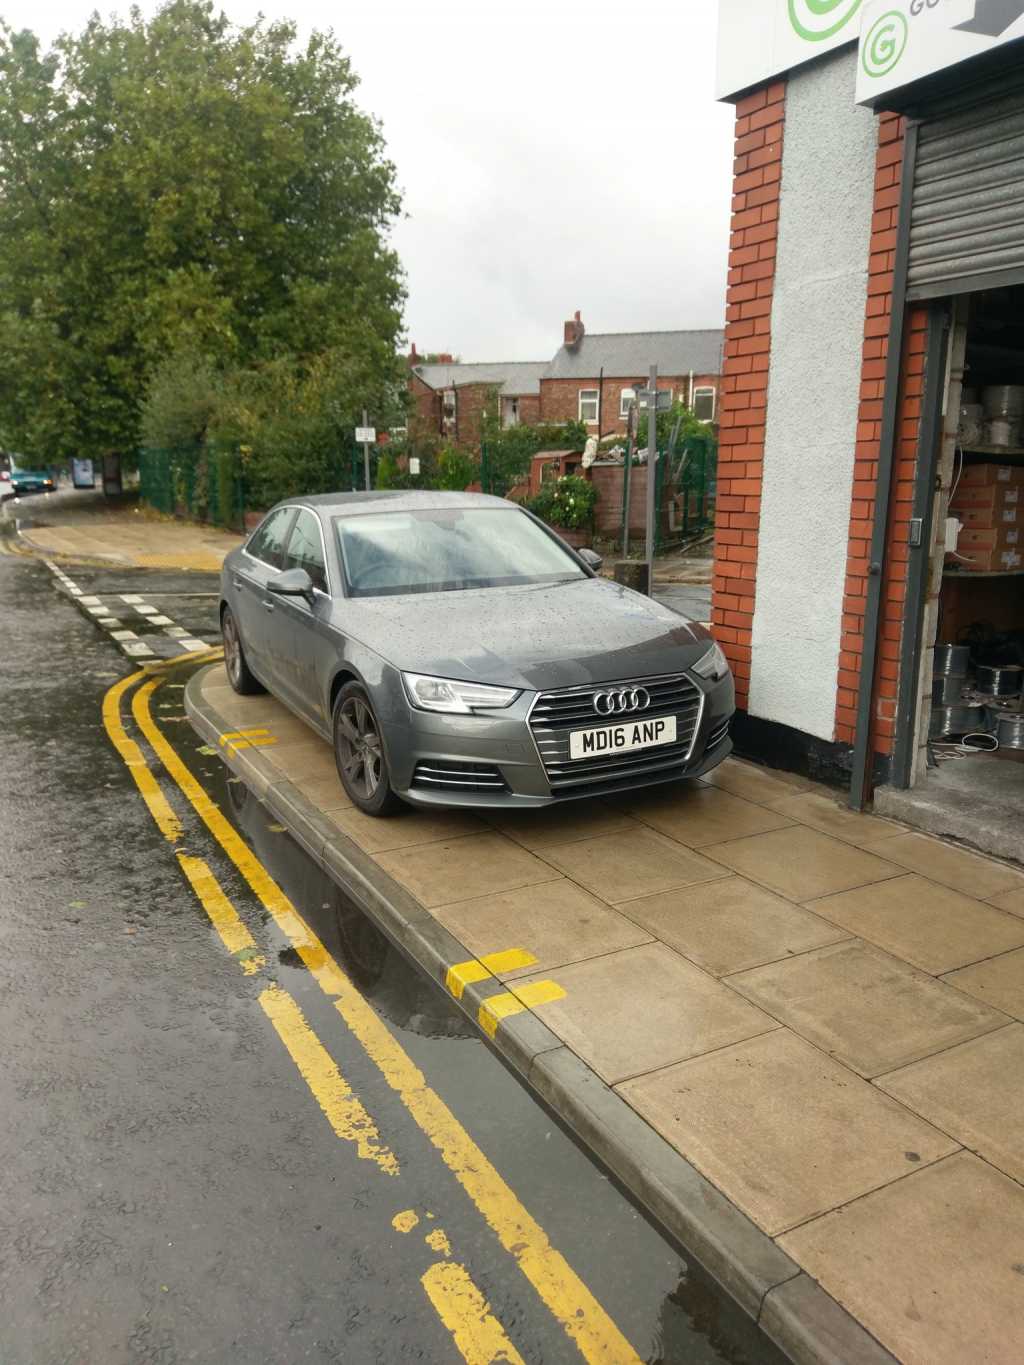 MD16 ANP displaying Selfish Parking